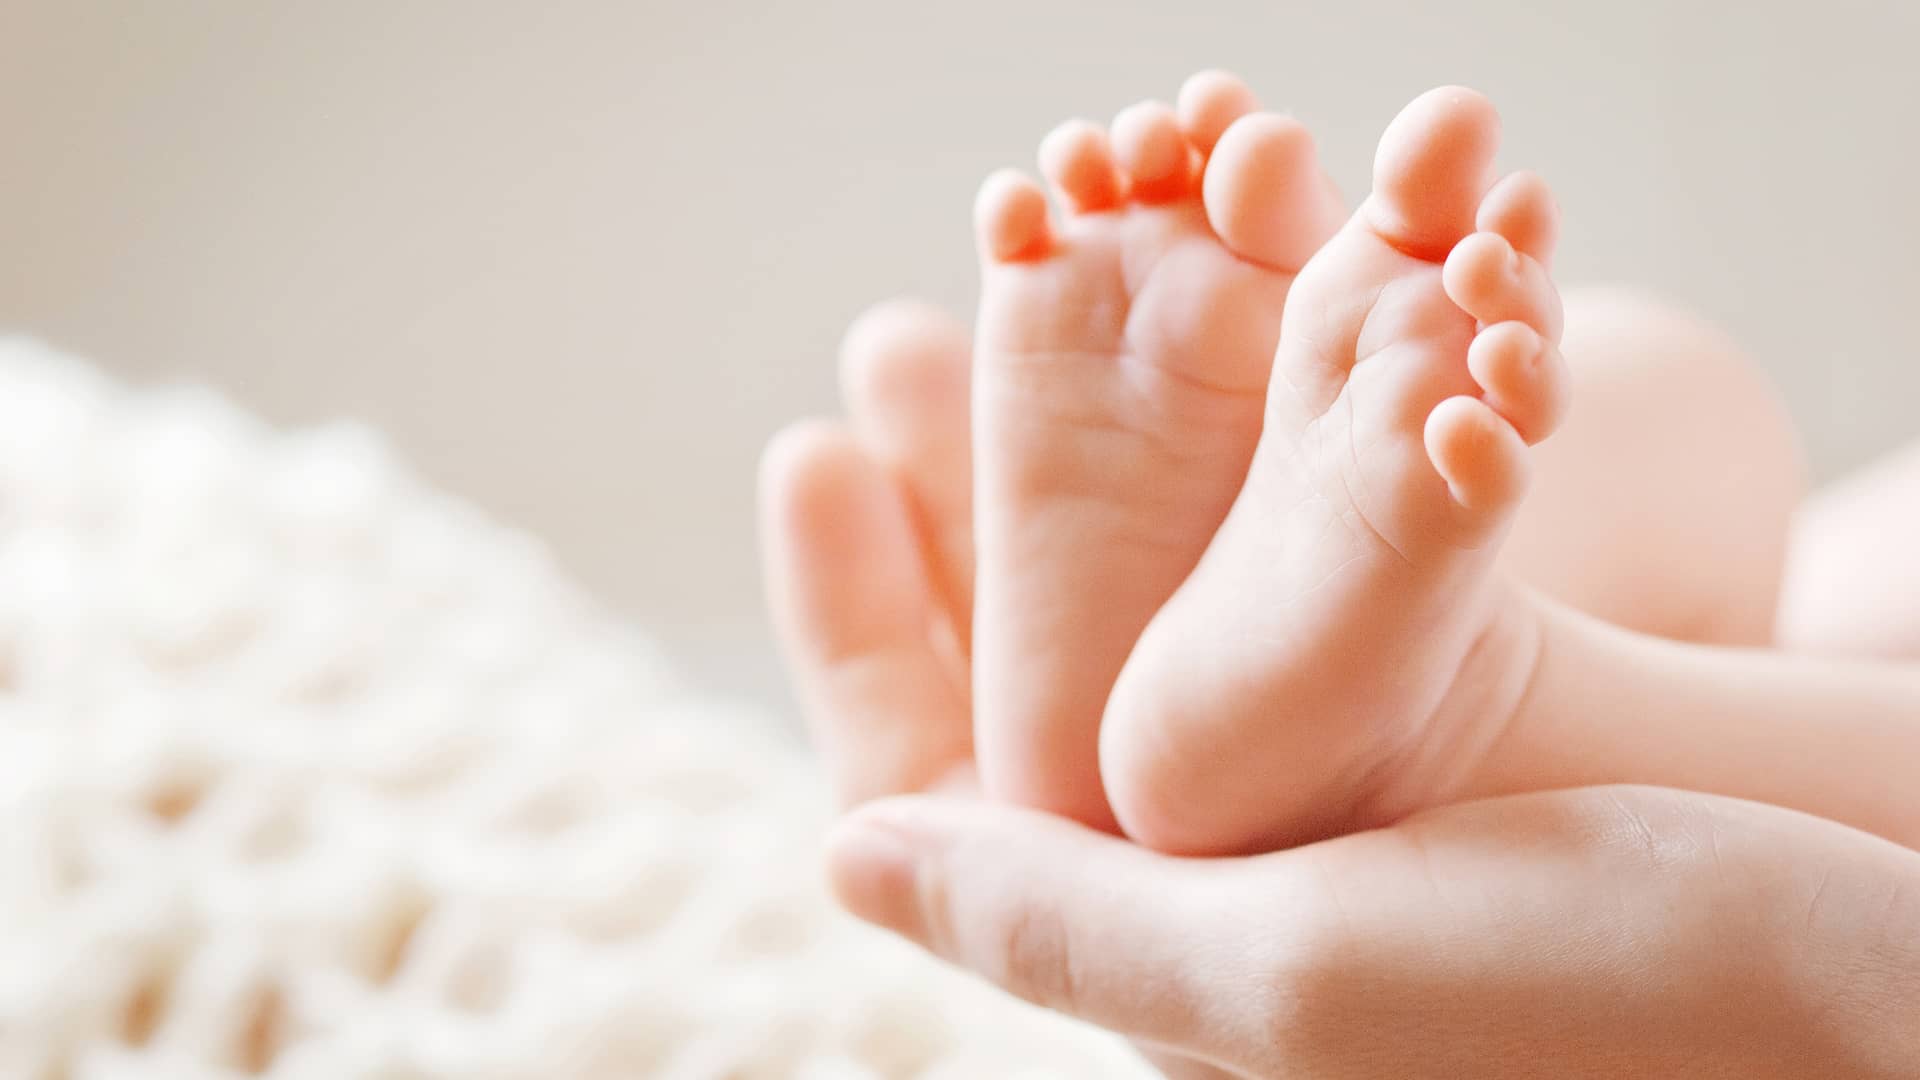 mano de una mama sujetando los pies sanos de su bebe que no tiene hongos